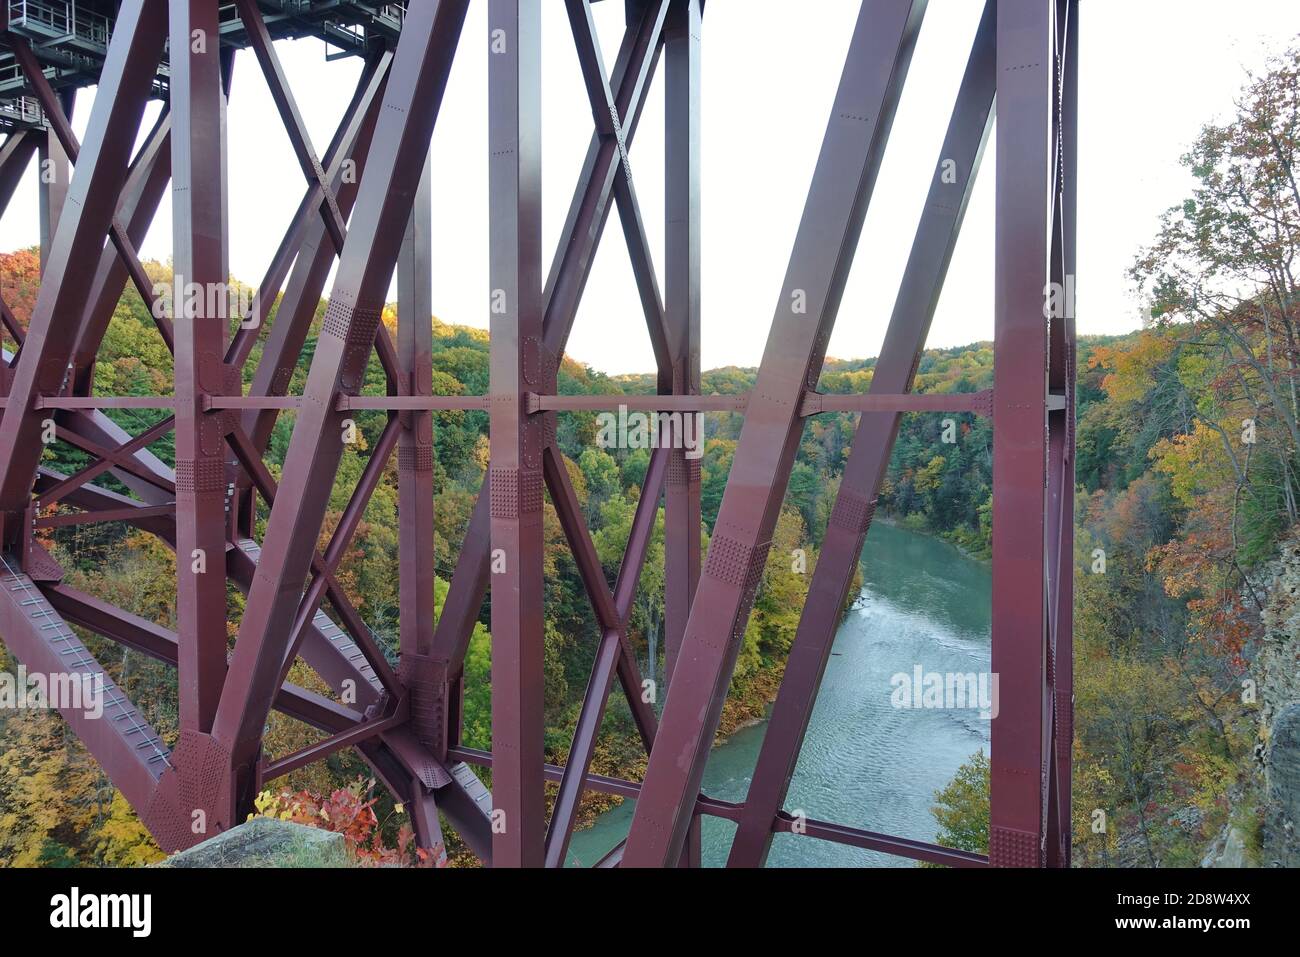 LETCHWORTH STATE PARK, NY –17 OCT 2020- vue sur le site touristique Genesee Arch Bridge dans le parc national de Letchworth à Castille, New York, pendant la saison des feuillages Banque D'Images